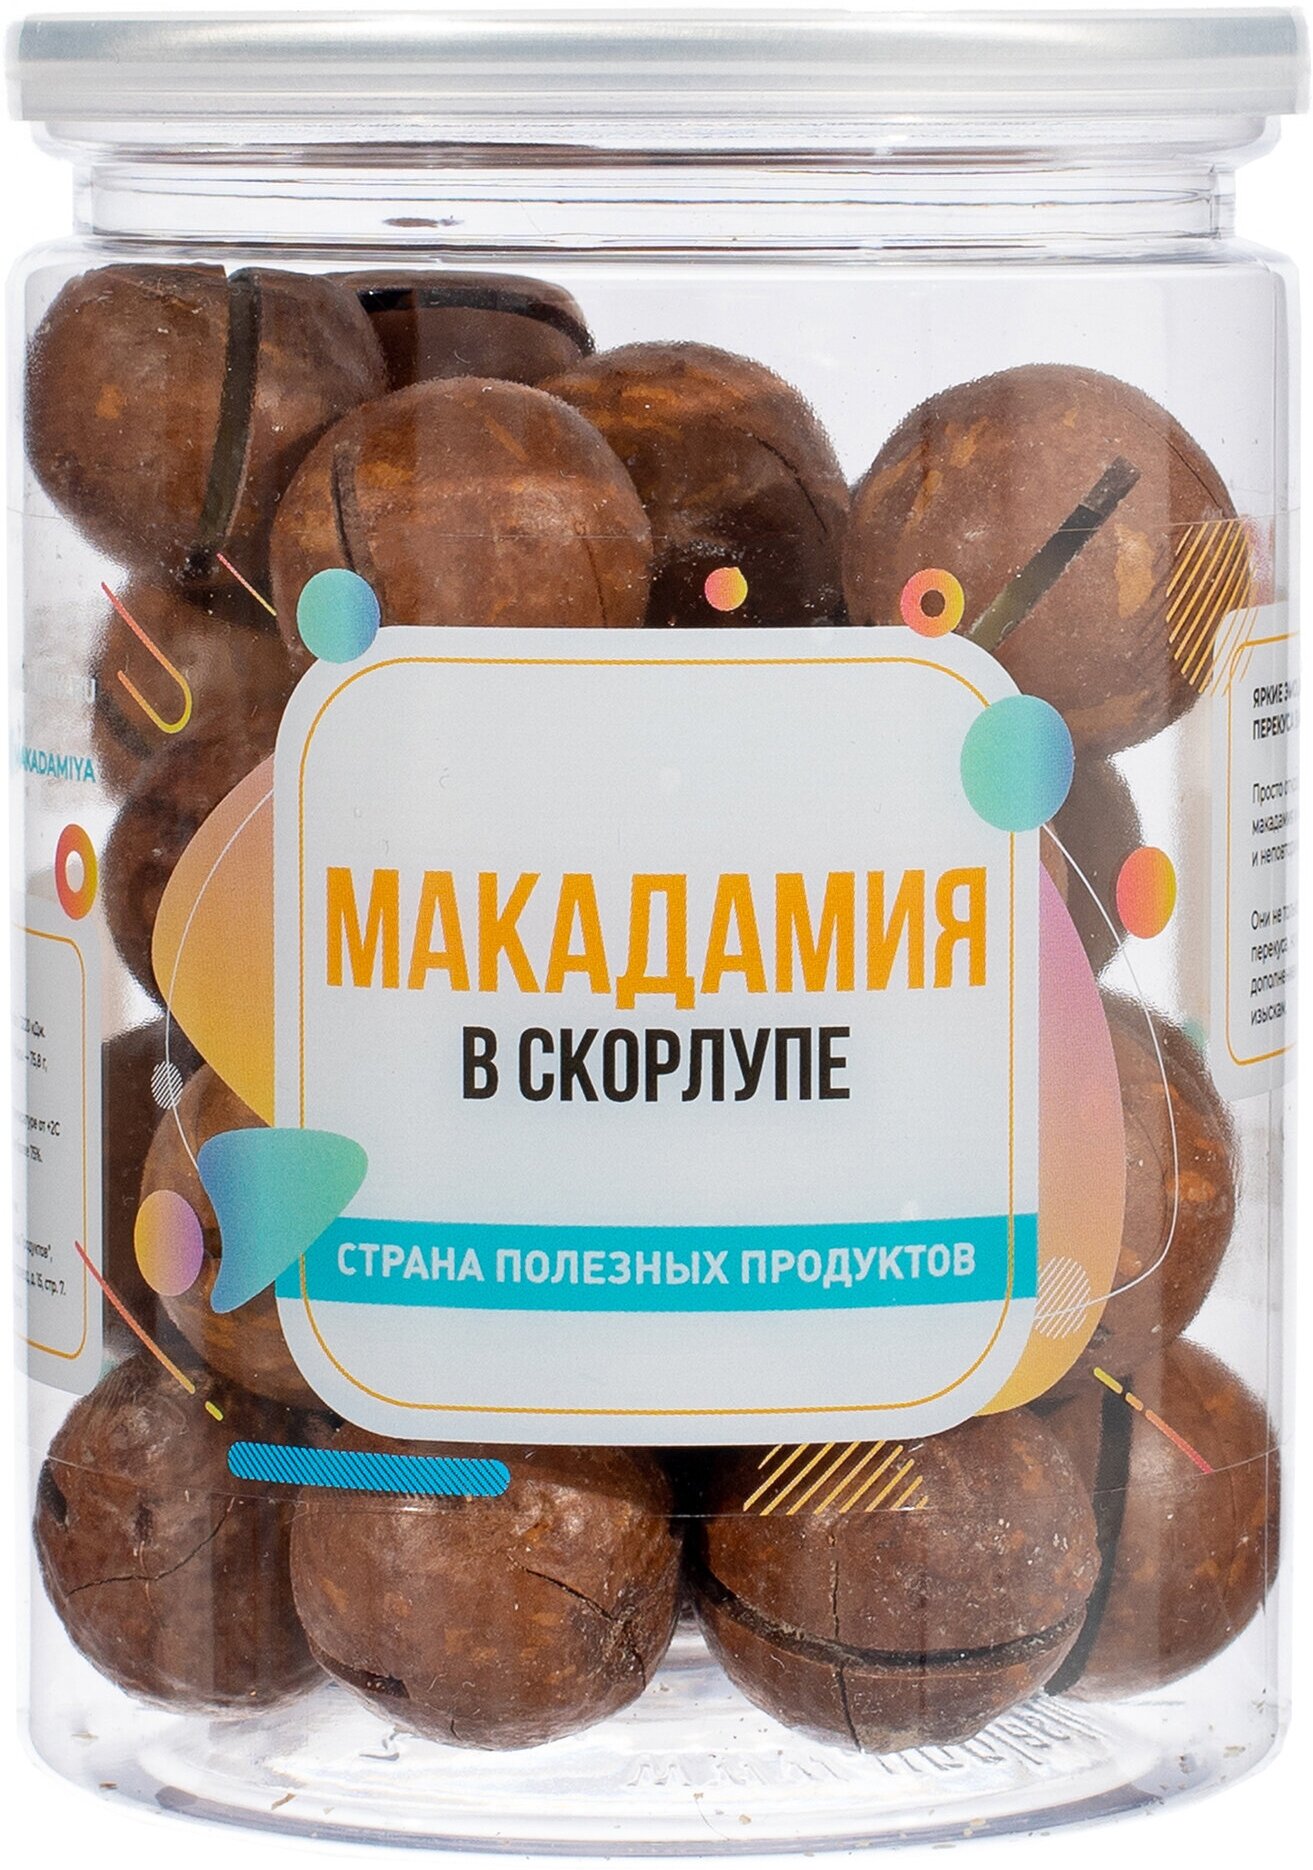 Орех Макадамия в скорлупе 250 гр, Страна Полезных Продуктов, Банка